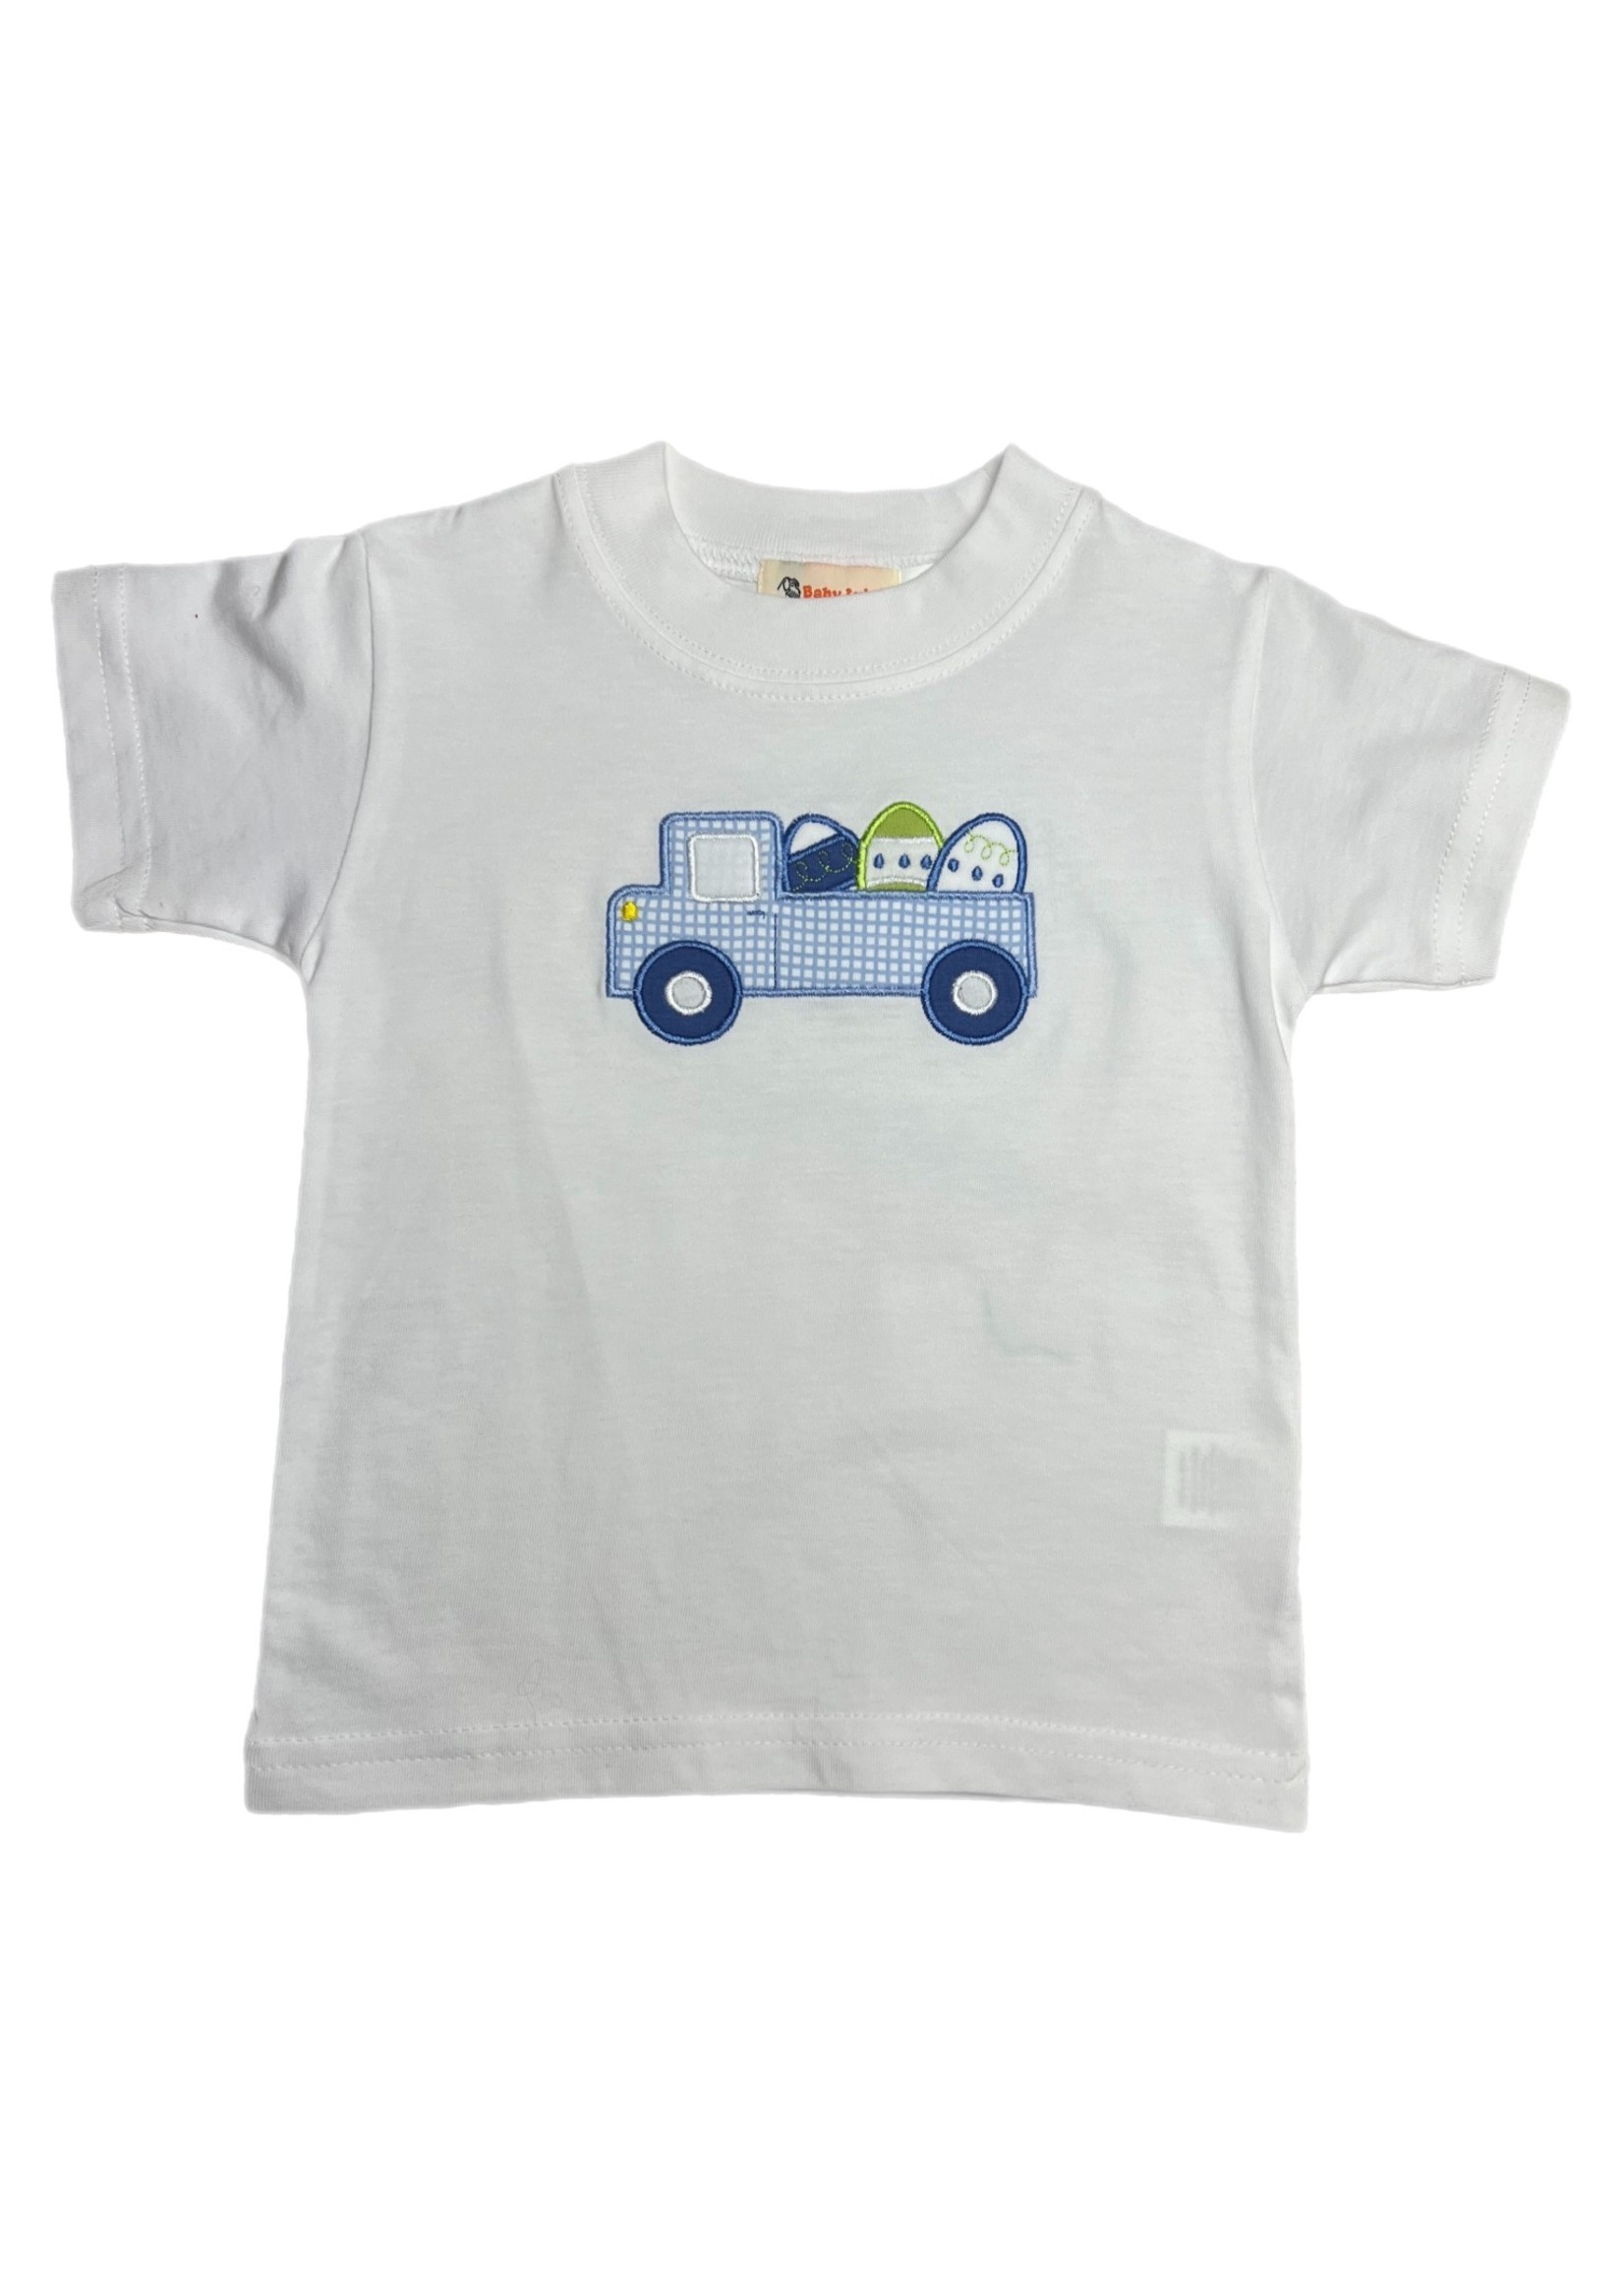 Luigi Boy S/S Shirt Truck W/ Easter Eggs